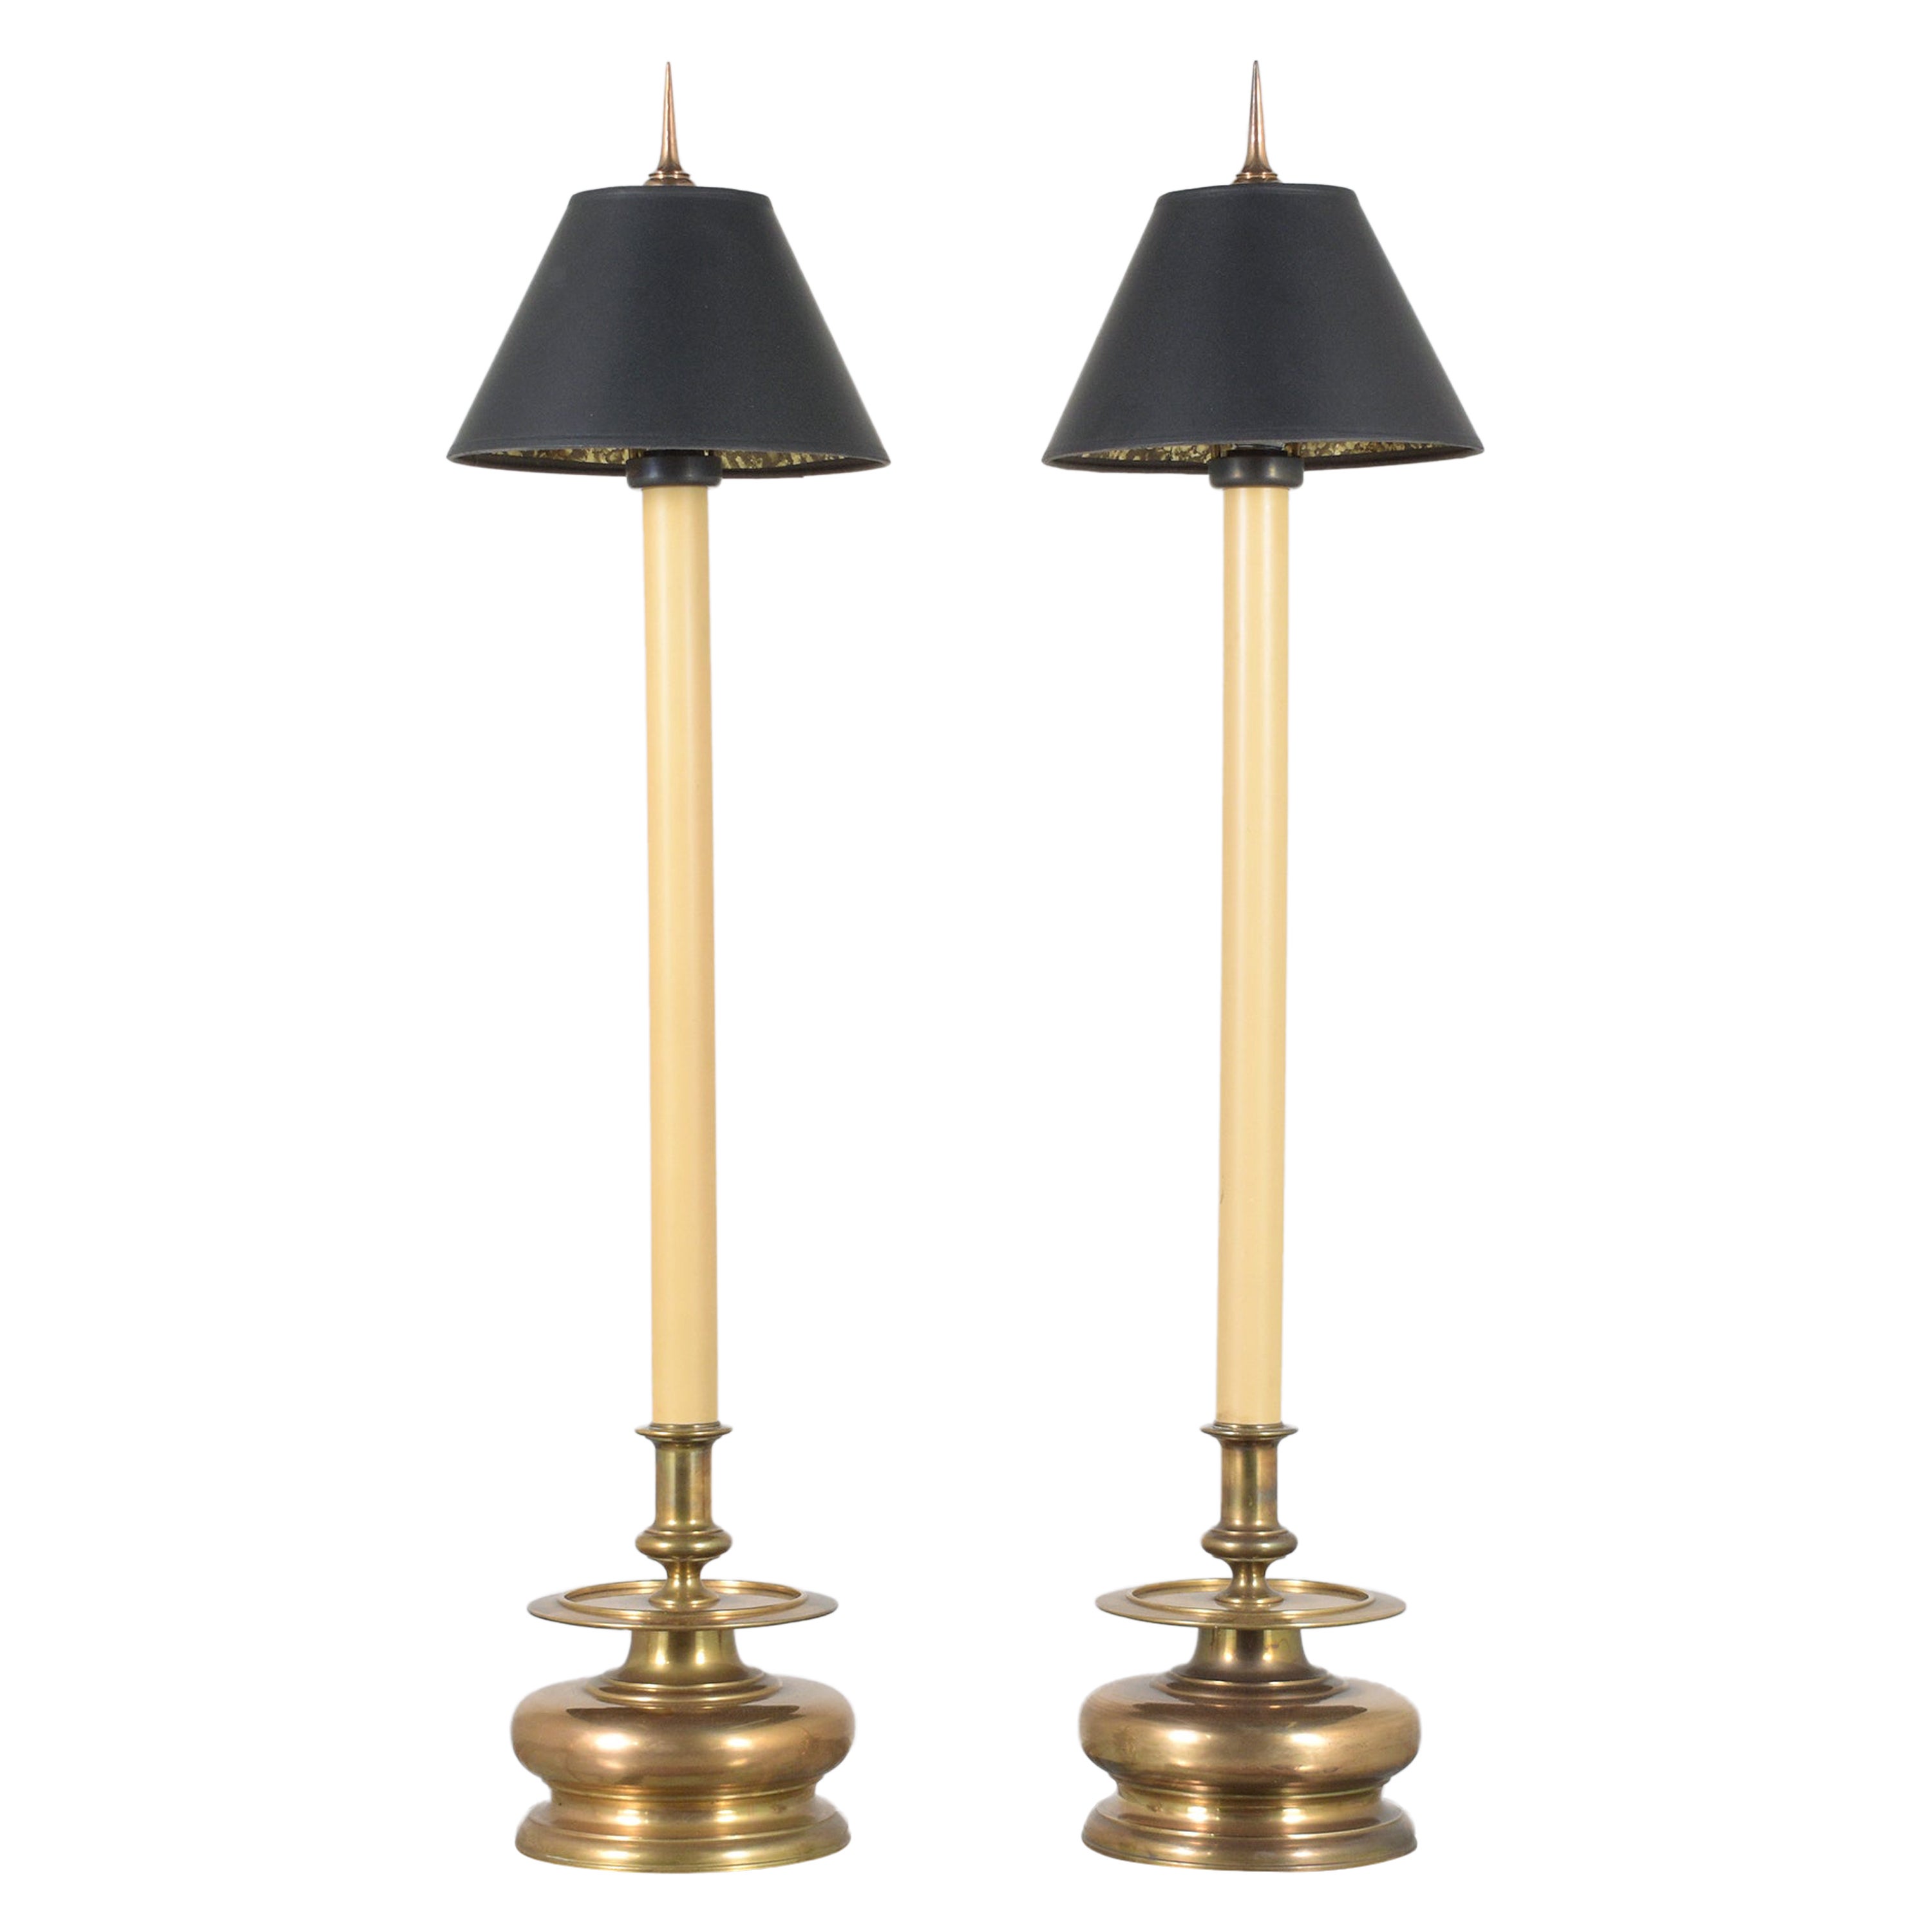 Pair of Vintage Hollywood Regency Table Lamps